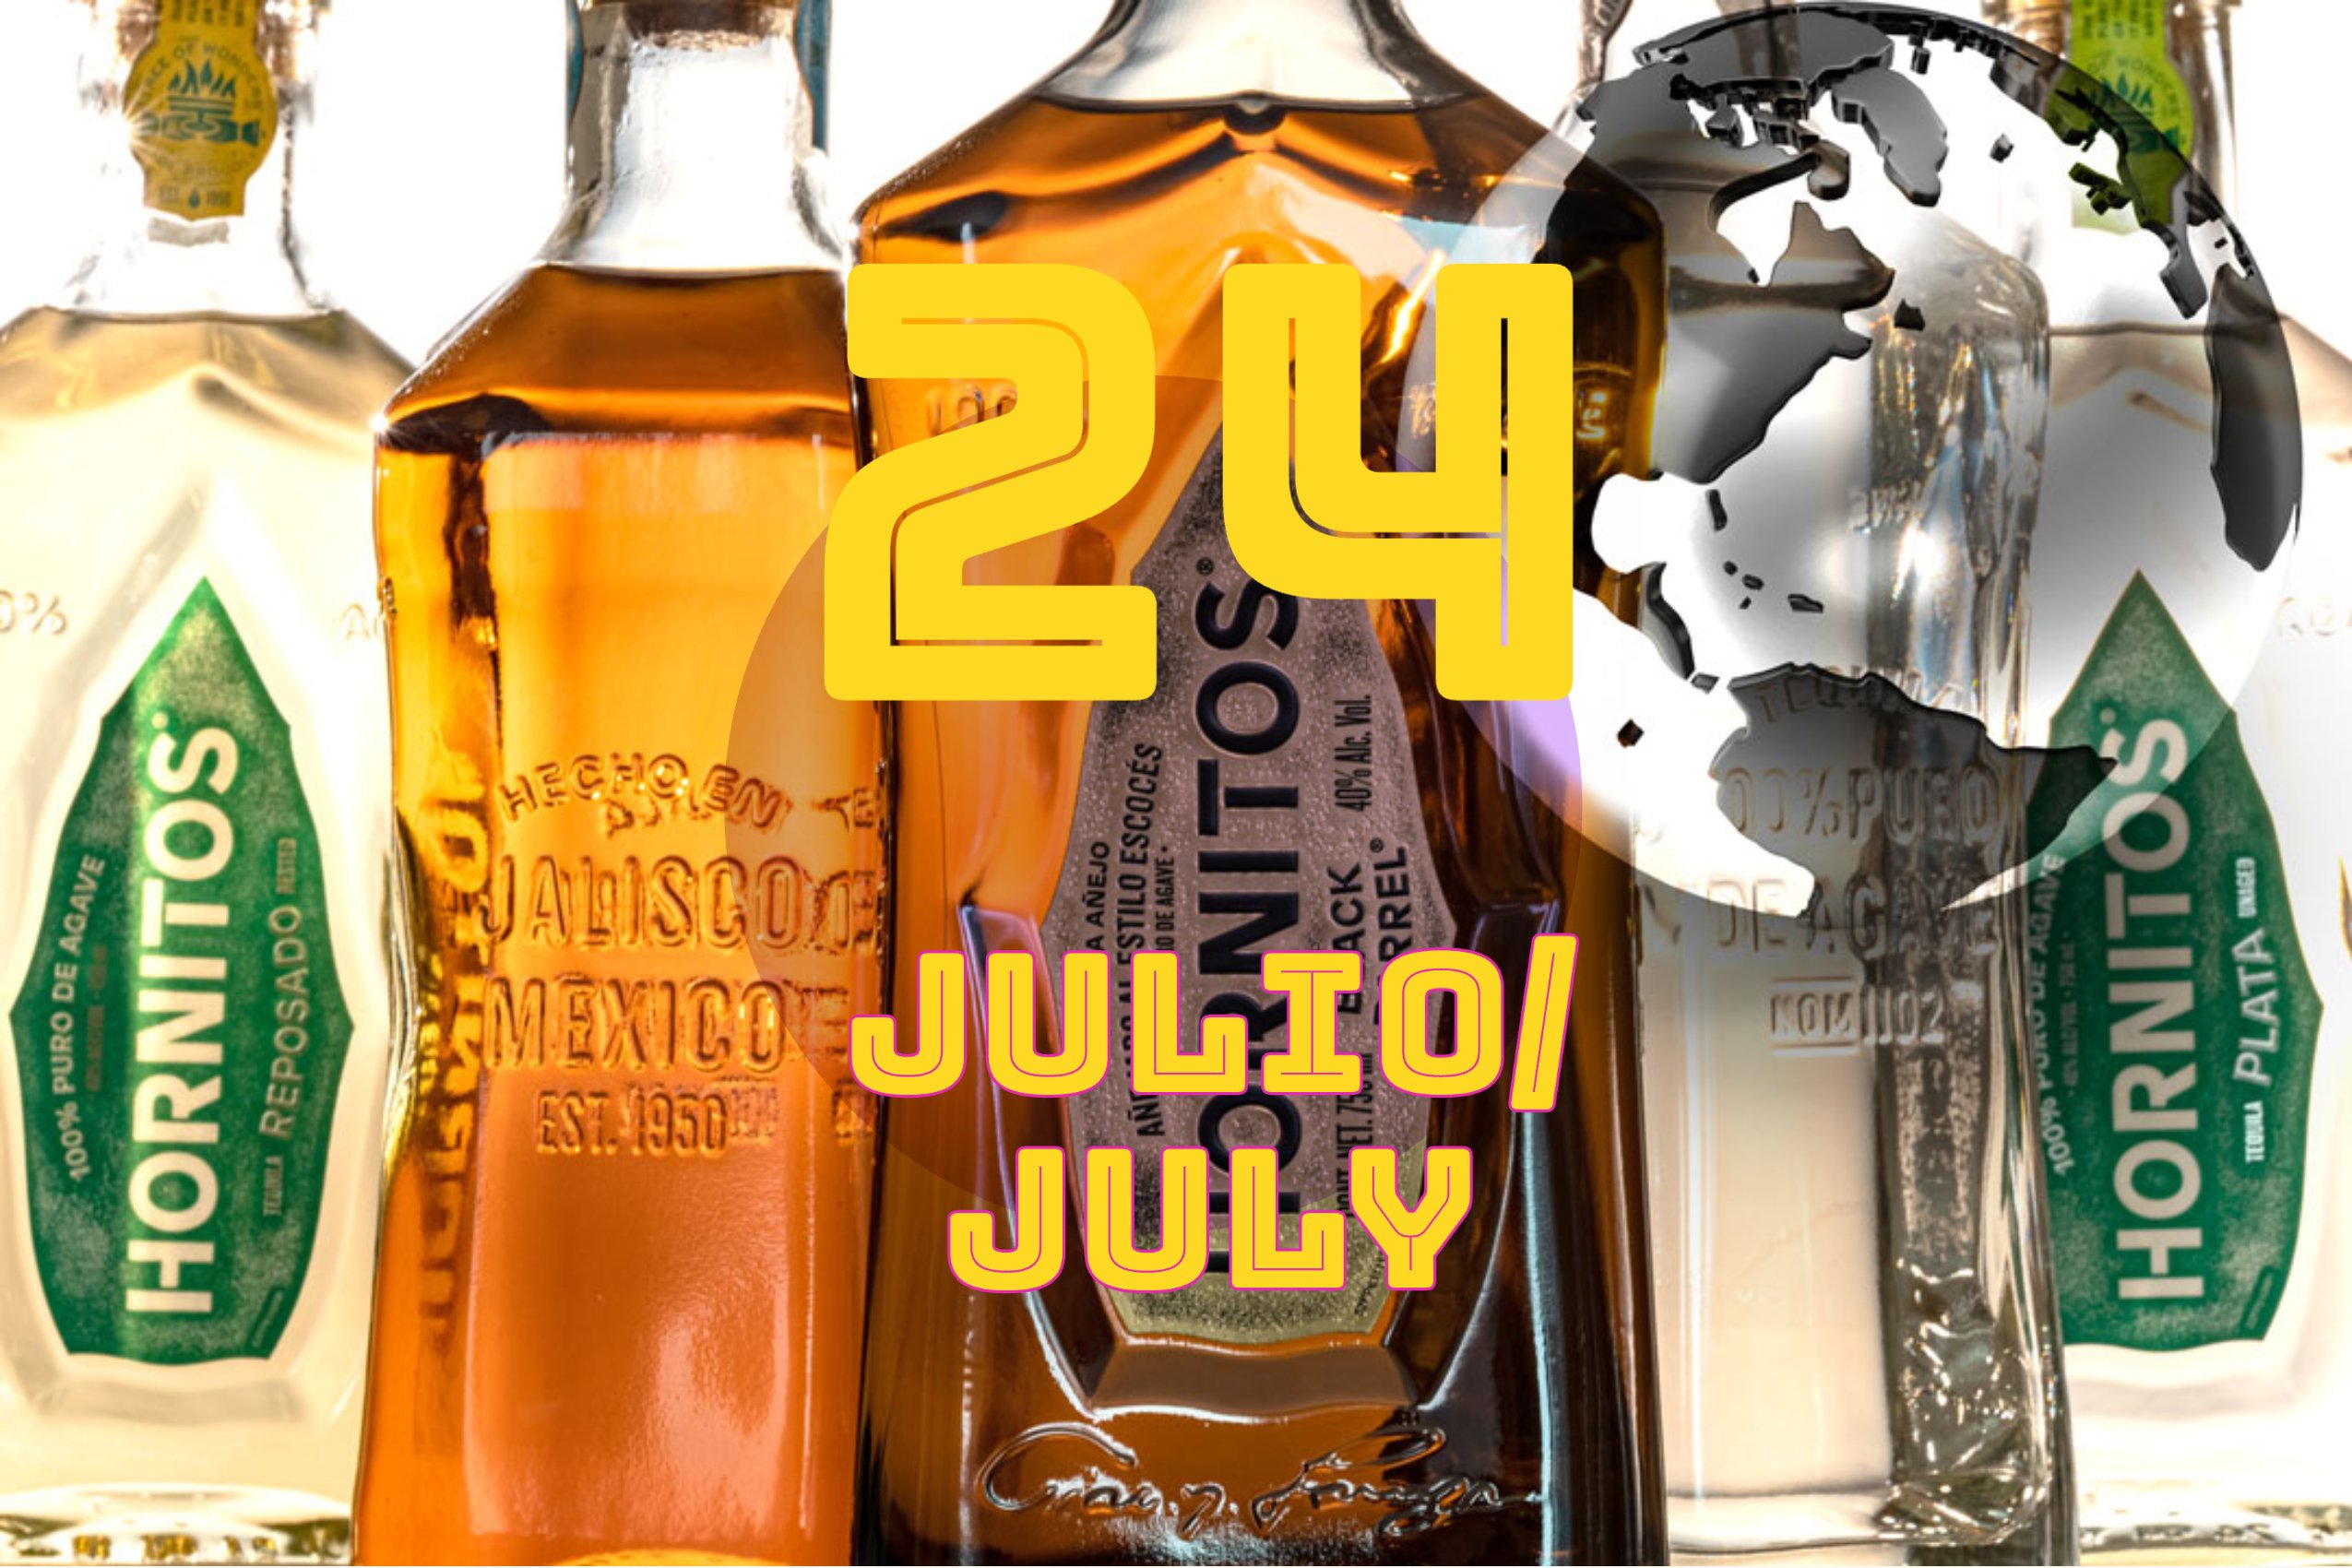 24 July Julio